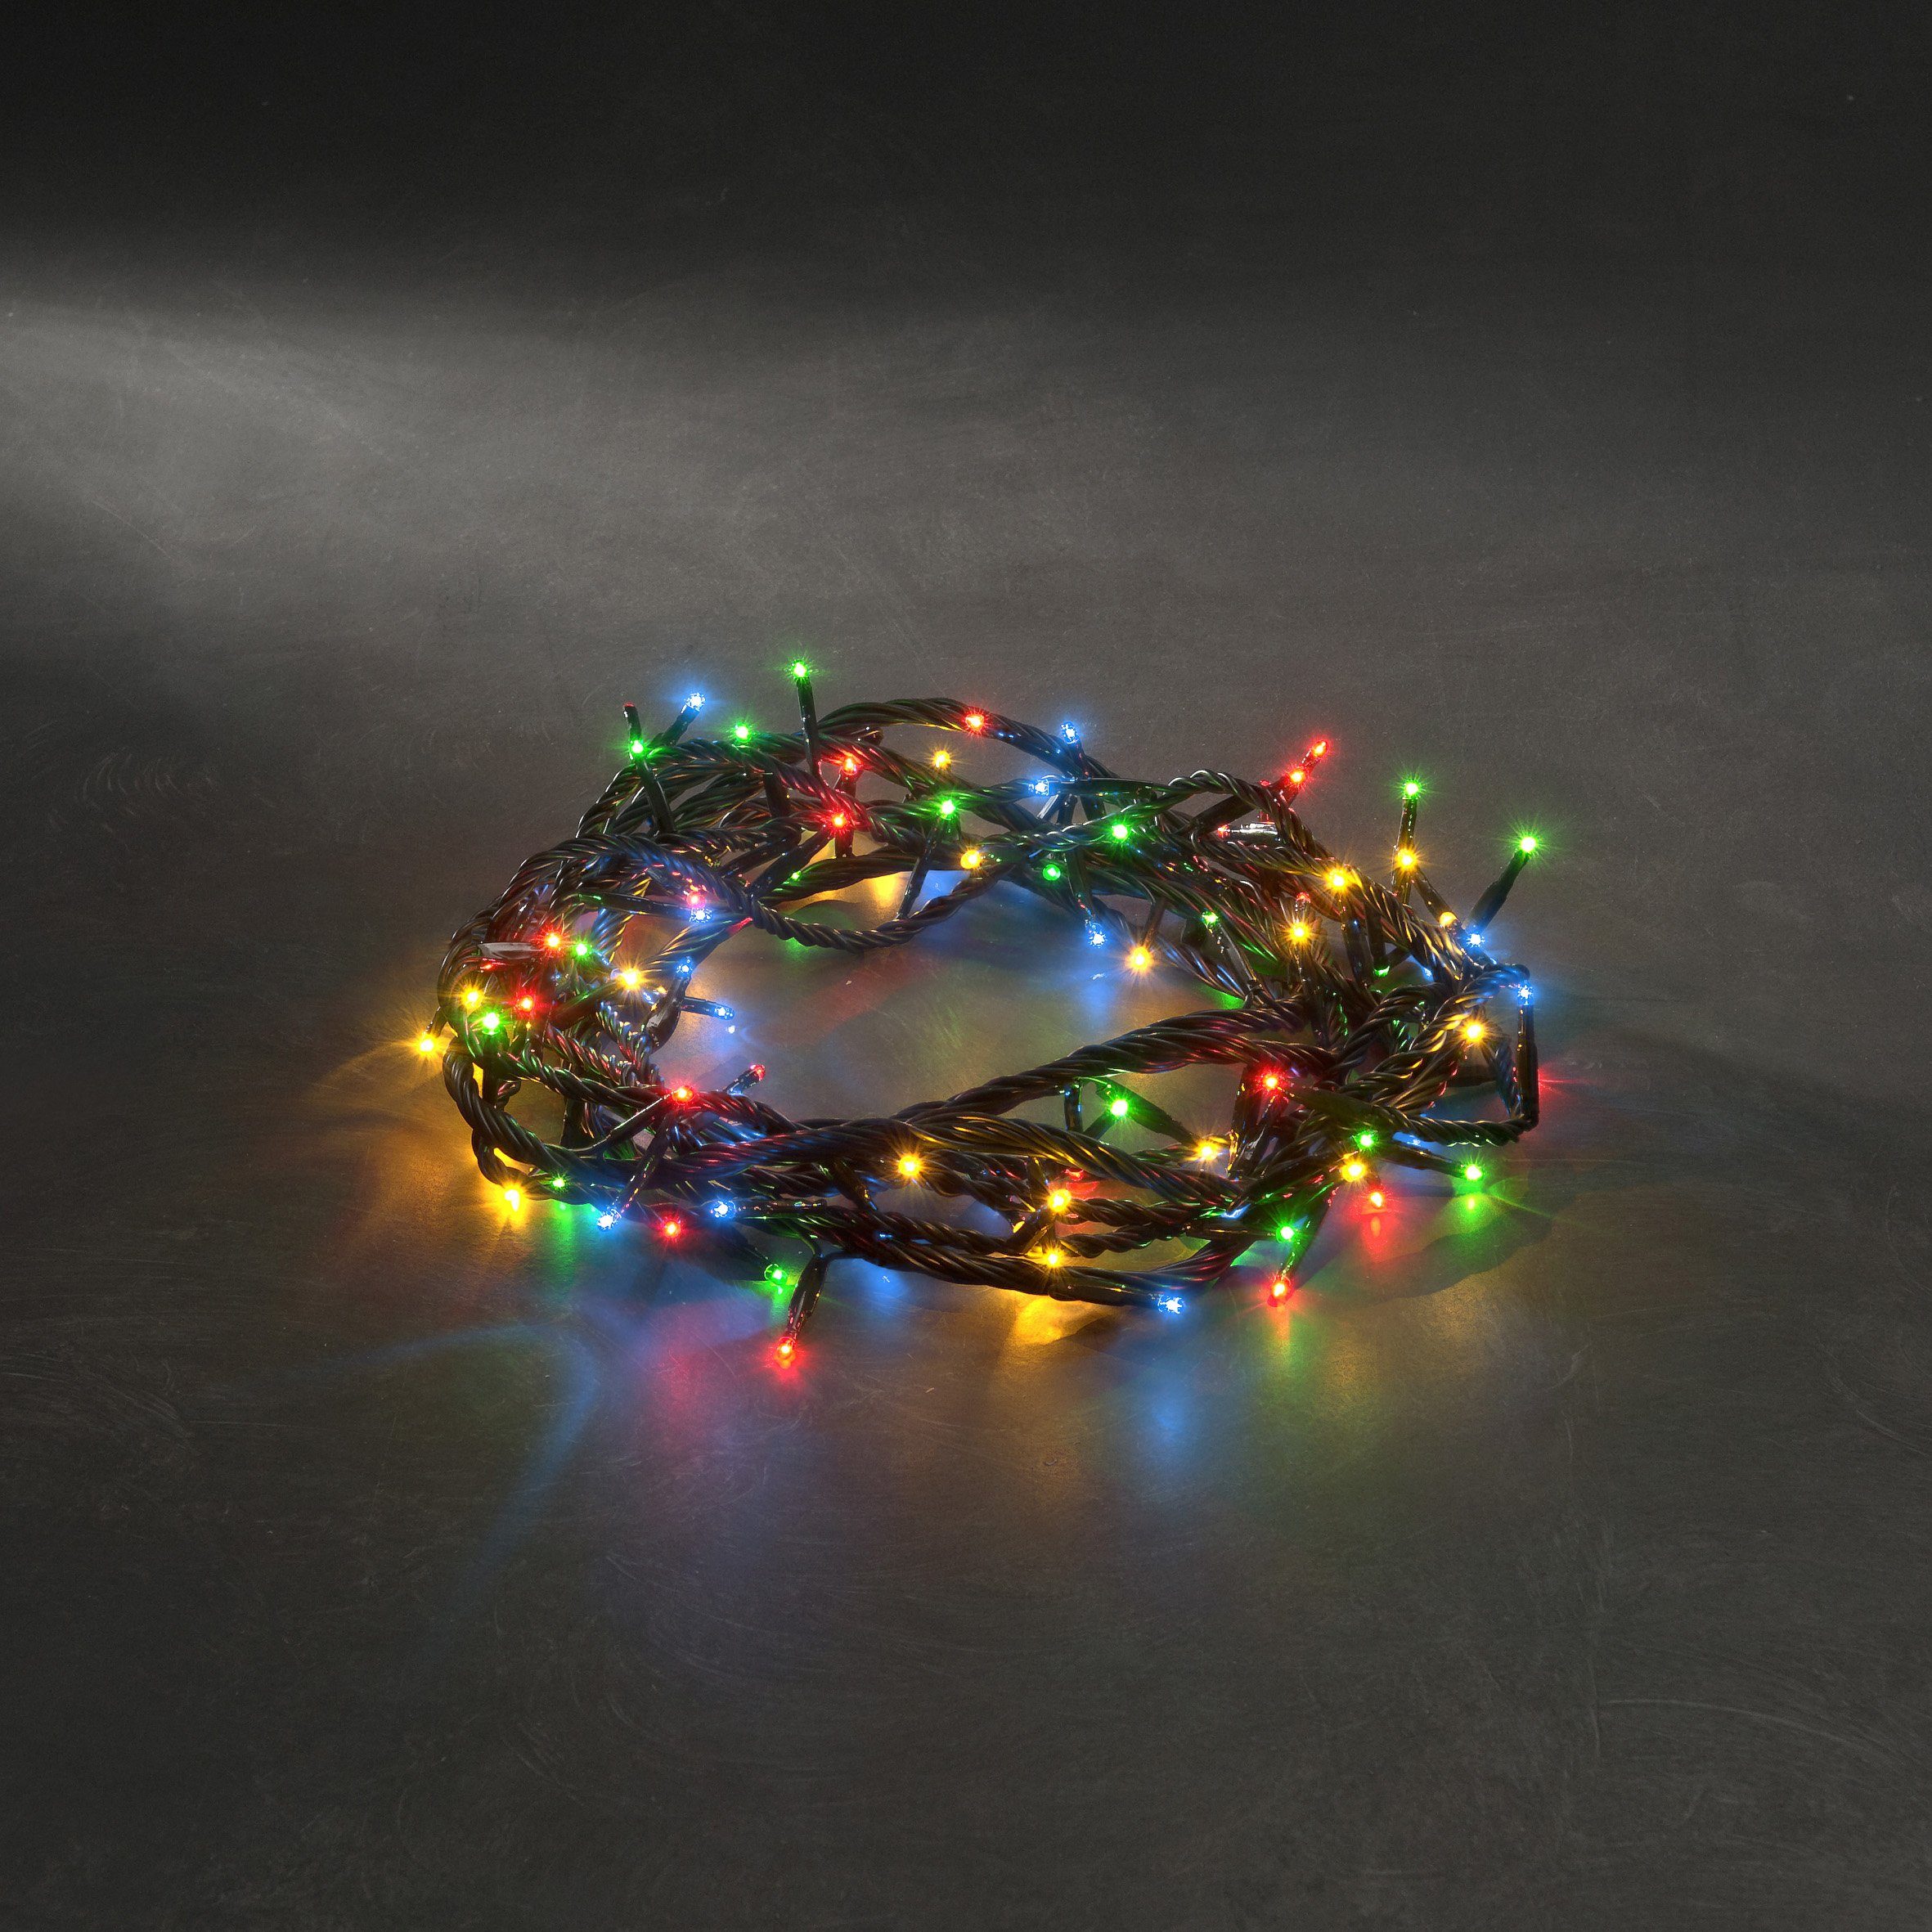 KONSTSMIDE Lichterkette Weihnachtsdeko aussen, 180-flammig, Microlight, verschweißt, mit 8 Funktionen, 180 bunte Birnen